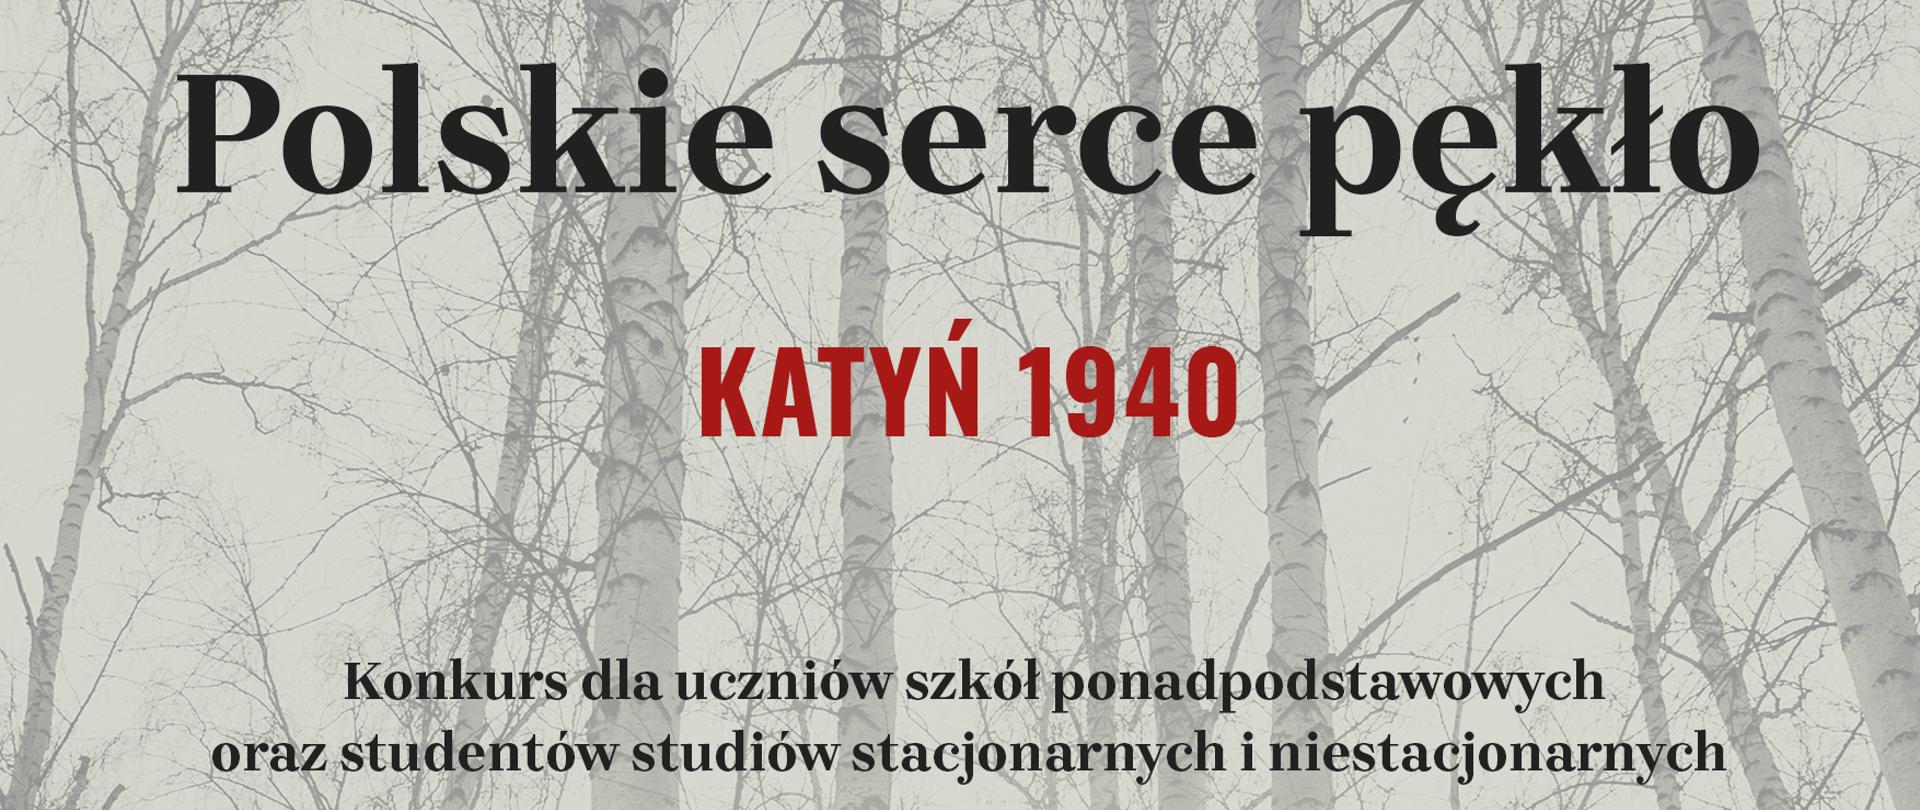 Inauguracja III edycji ogólnopolskiego konkursu „Polskie serce pękło. Katyń 1940”